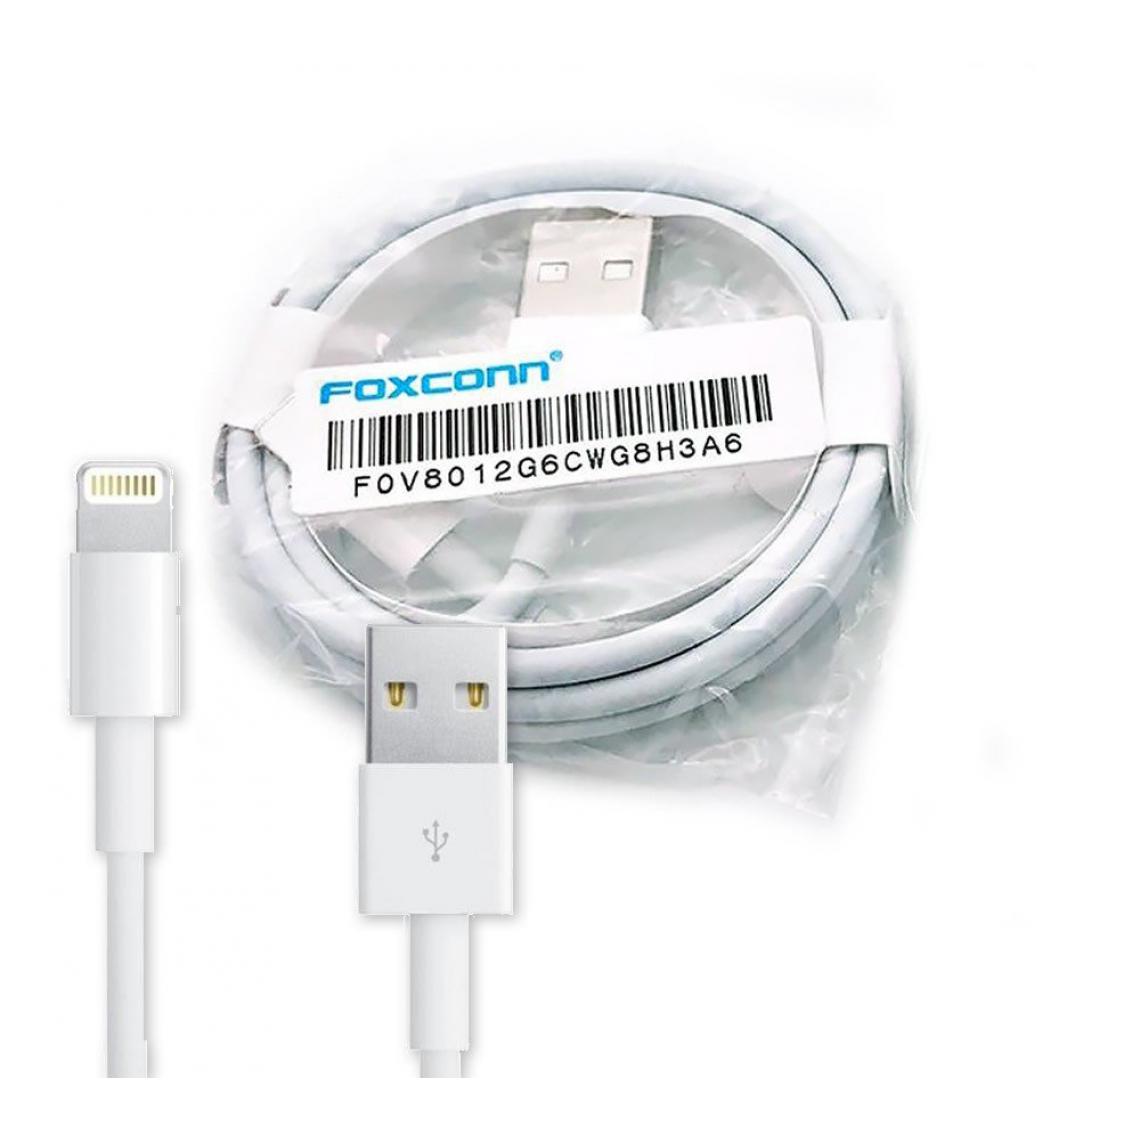 Phonecare - Cable 100cm pour Iphone 6 Lighting Foxconn Certificat MFI - Autres accessoires smartphone